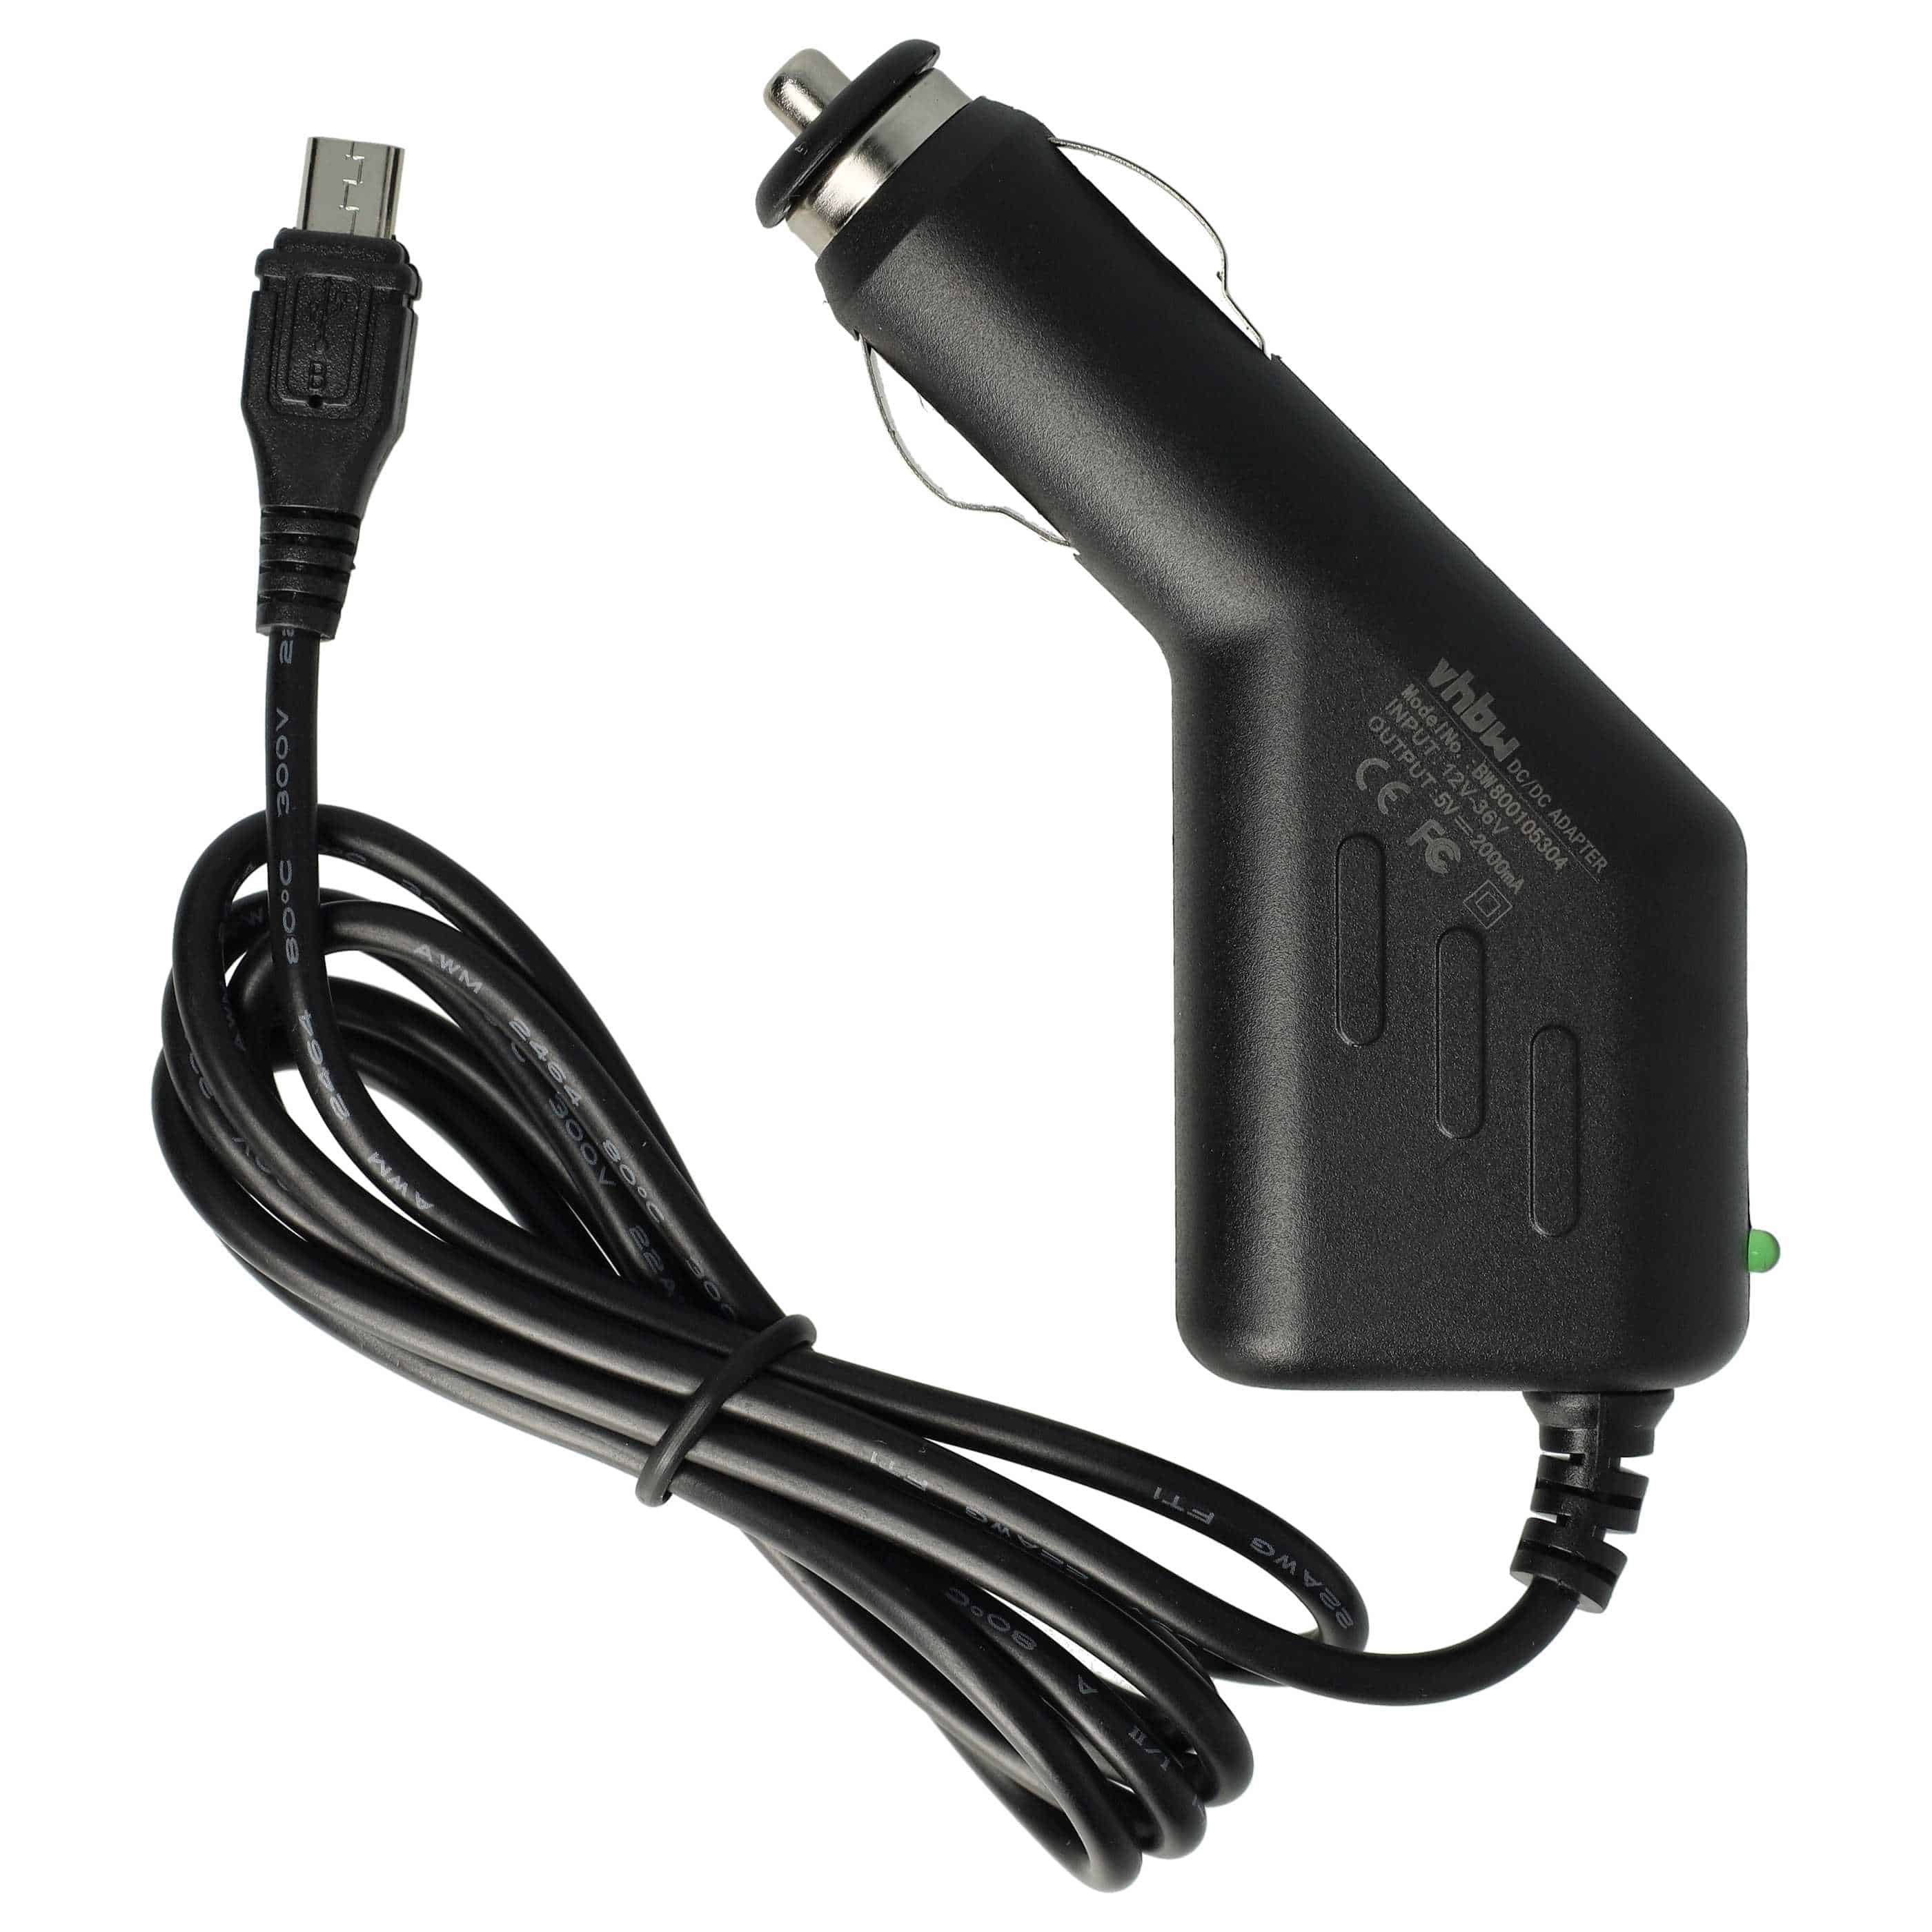 Caricatore per auto micro-USB 2,0 A per dispositivi come smartphone, GPS, navigatore Olympia ecc.